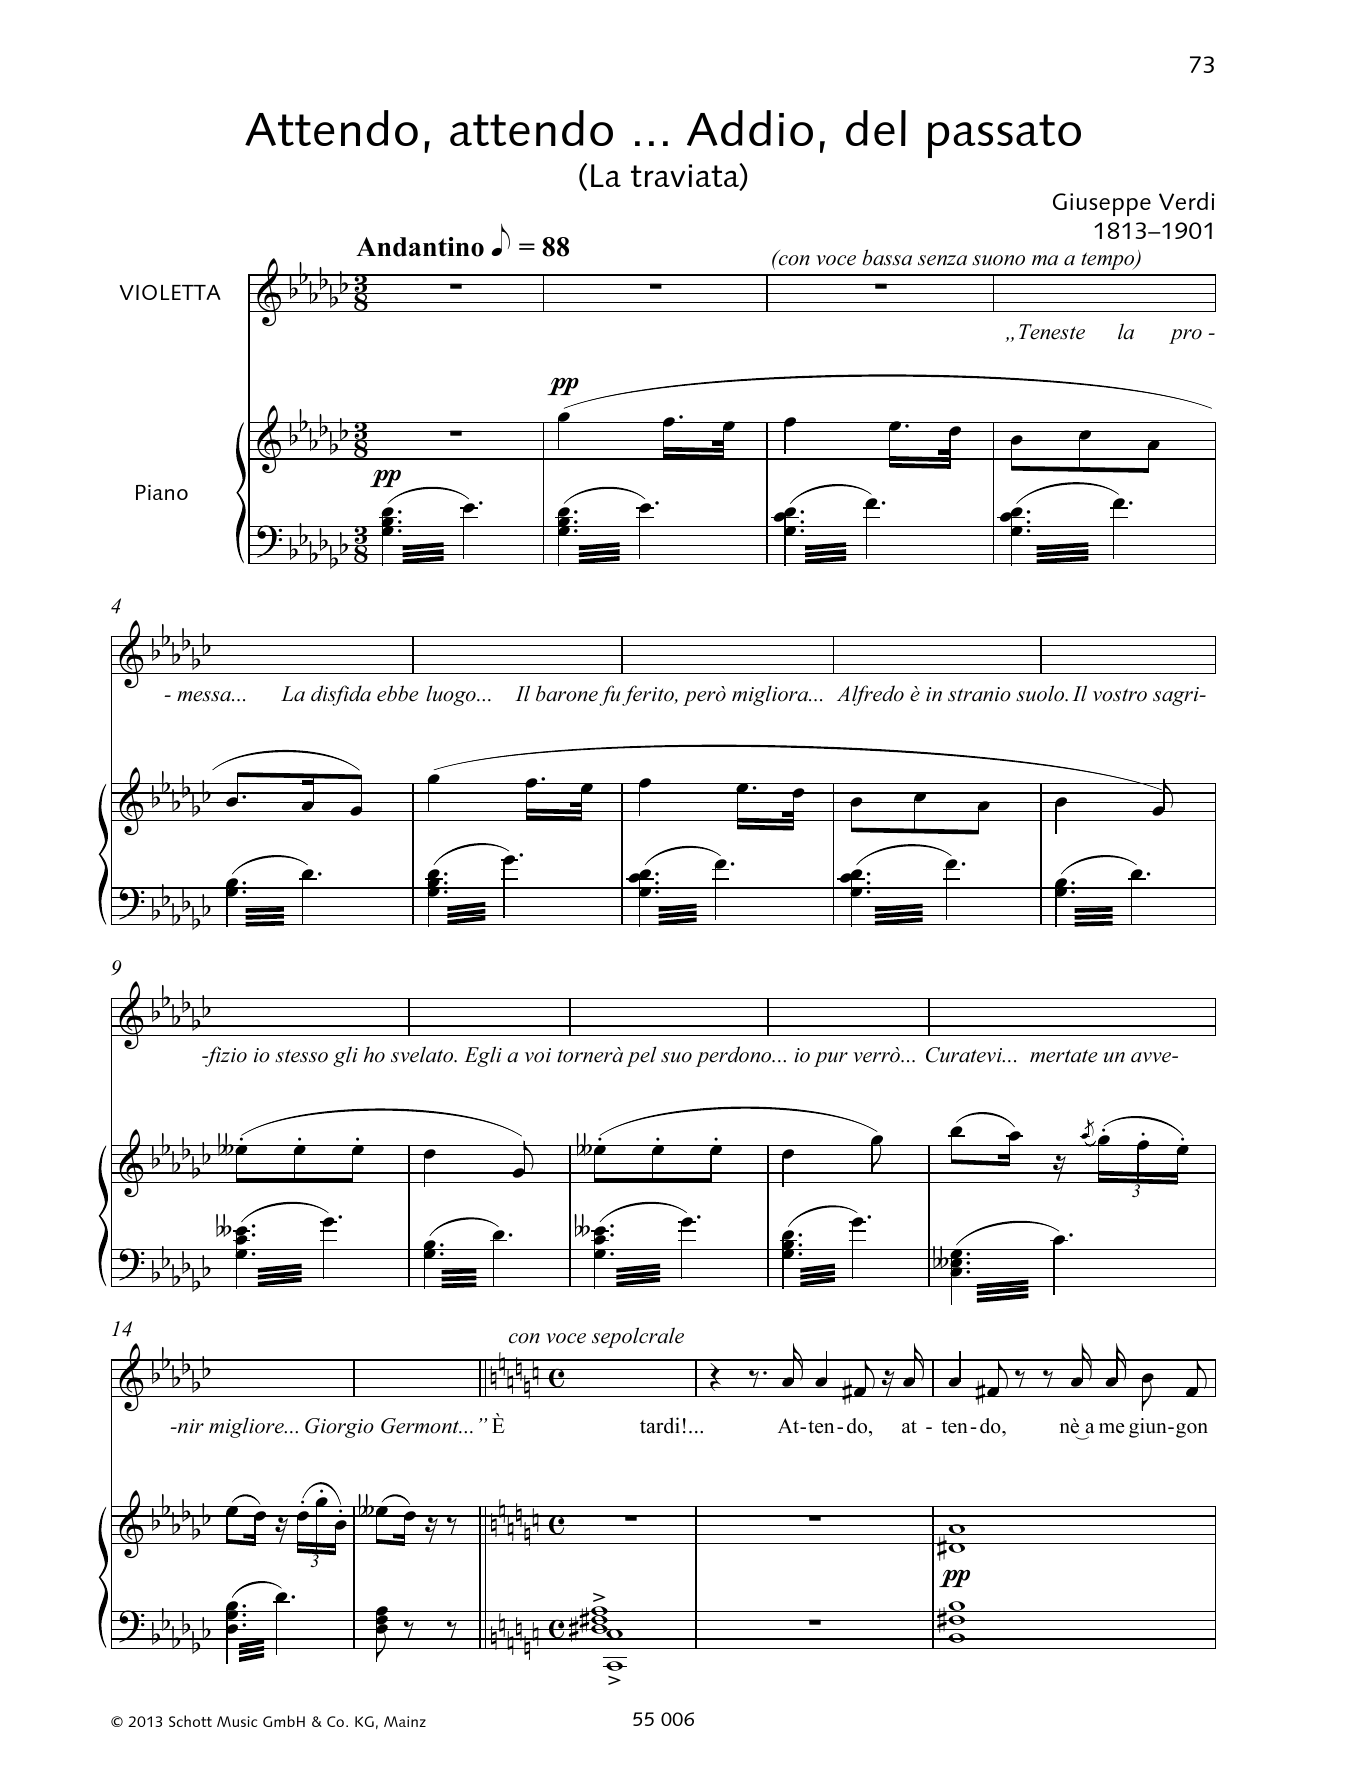 Download Giuseppe Verdi Attendo, attendo ... Addio, del passato Sheet Music